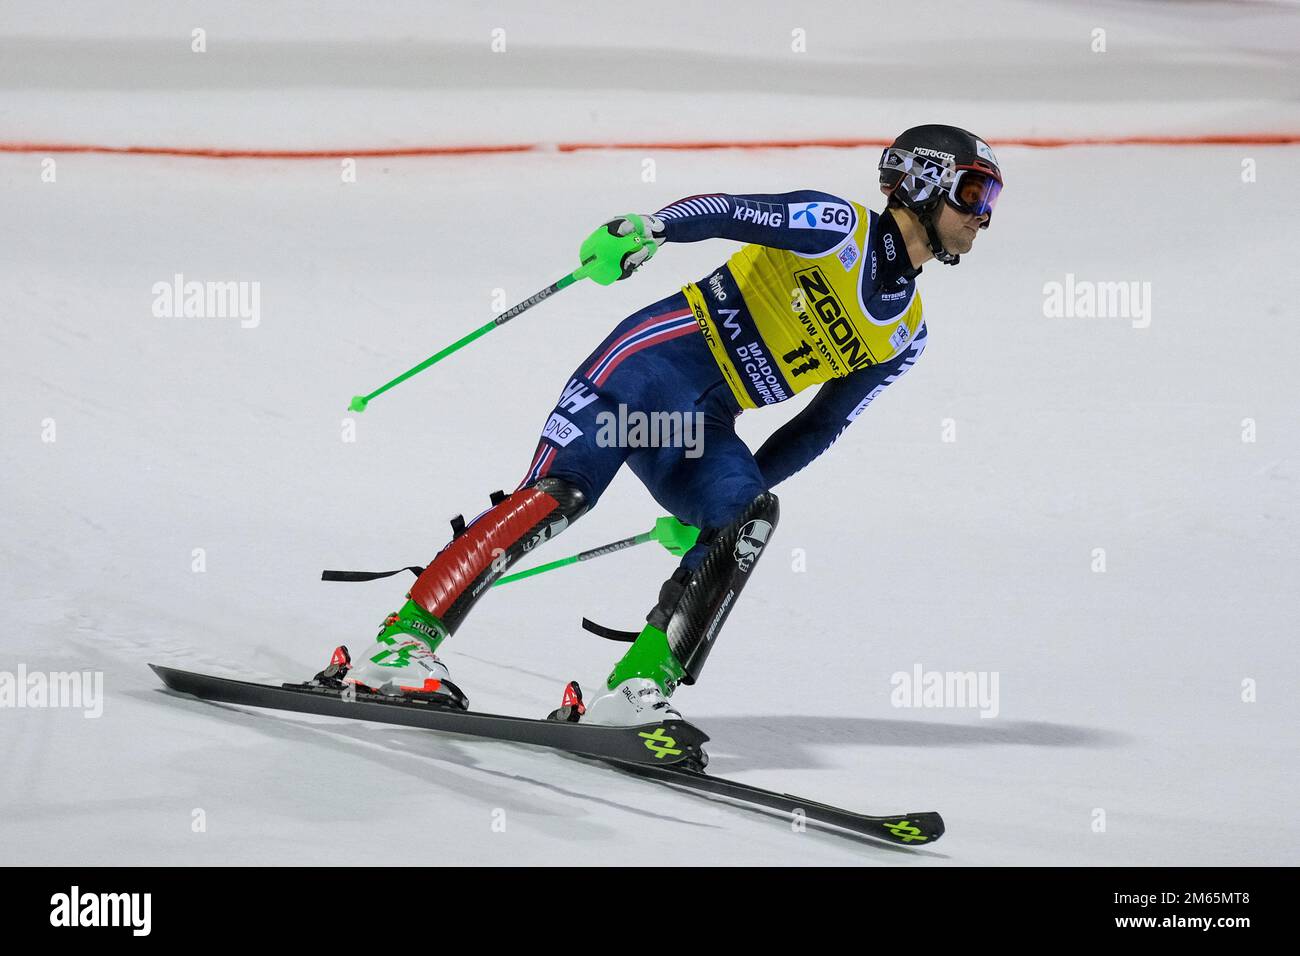 Audi FIS Alpine Ski World Cup - Men's Slalom on the 3Tre slope in Madonna di Campiglio - 22th December 2022, Madonna di Campiglio, Trento, Italy Stock Photo